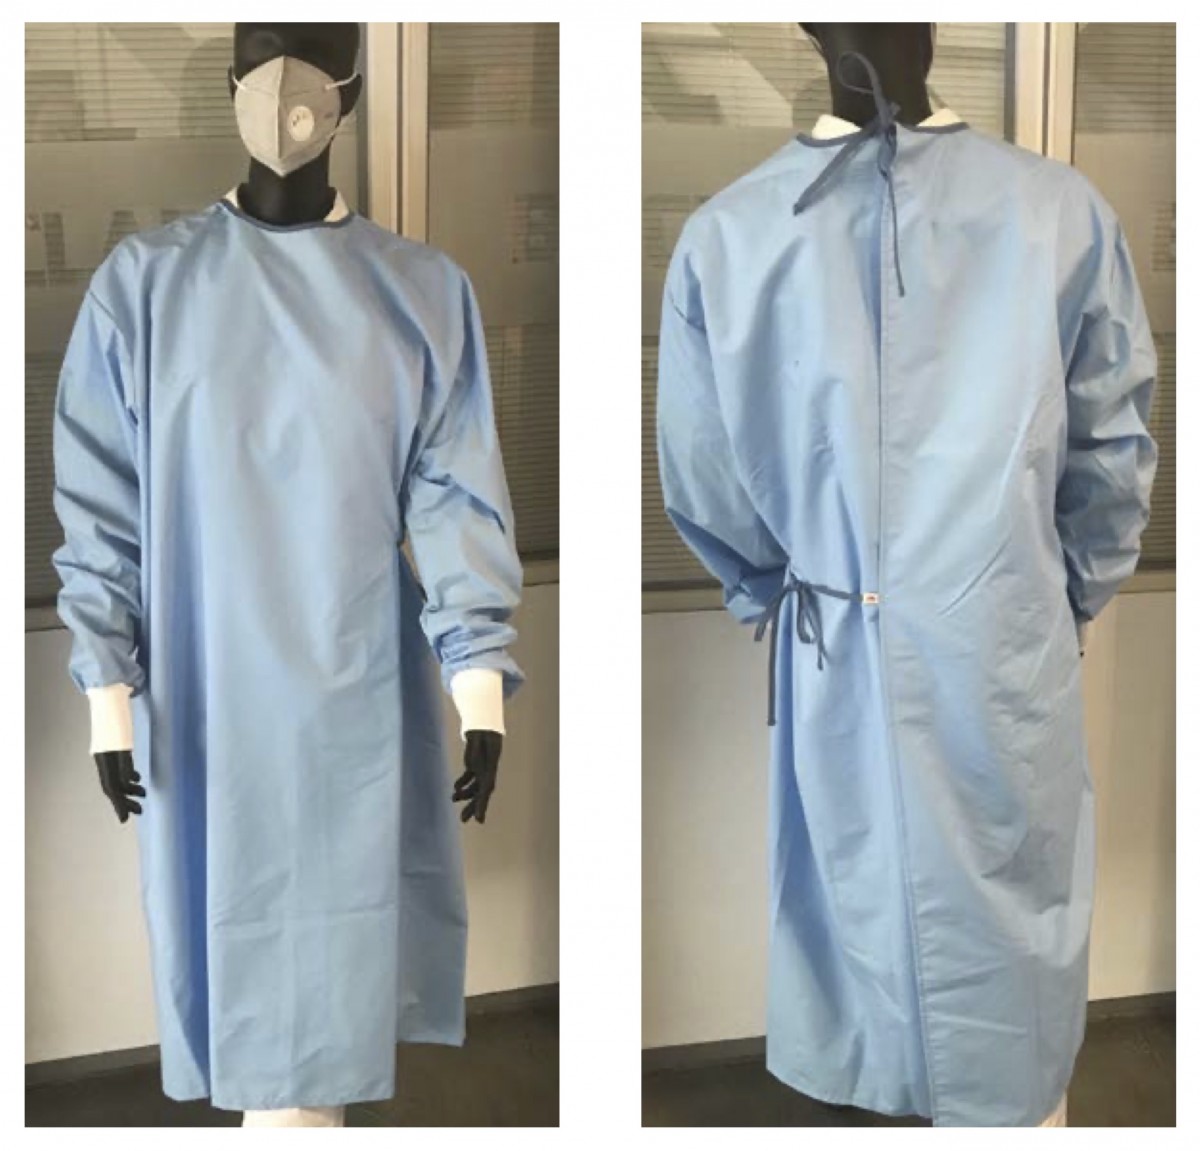 Jas Reusable isolatie gown, art. code 75500/192-1000/1100